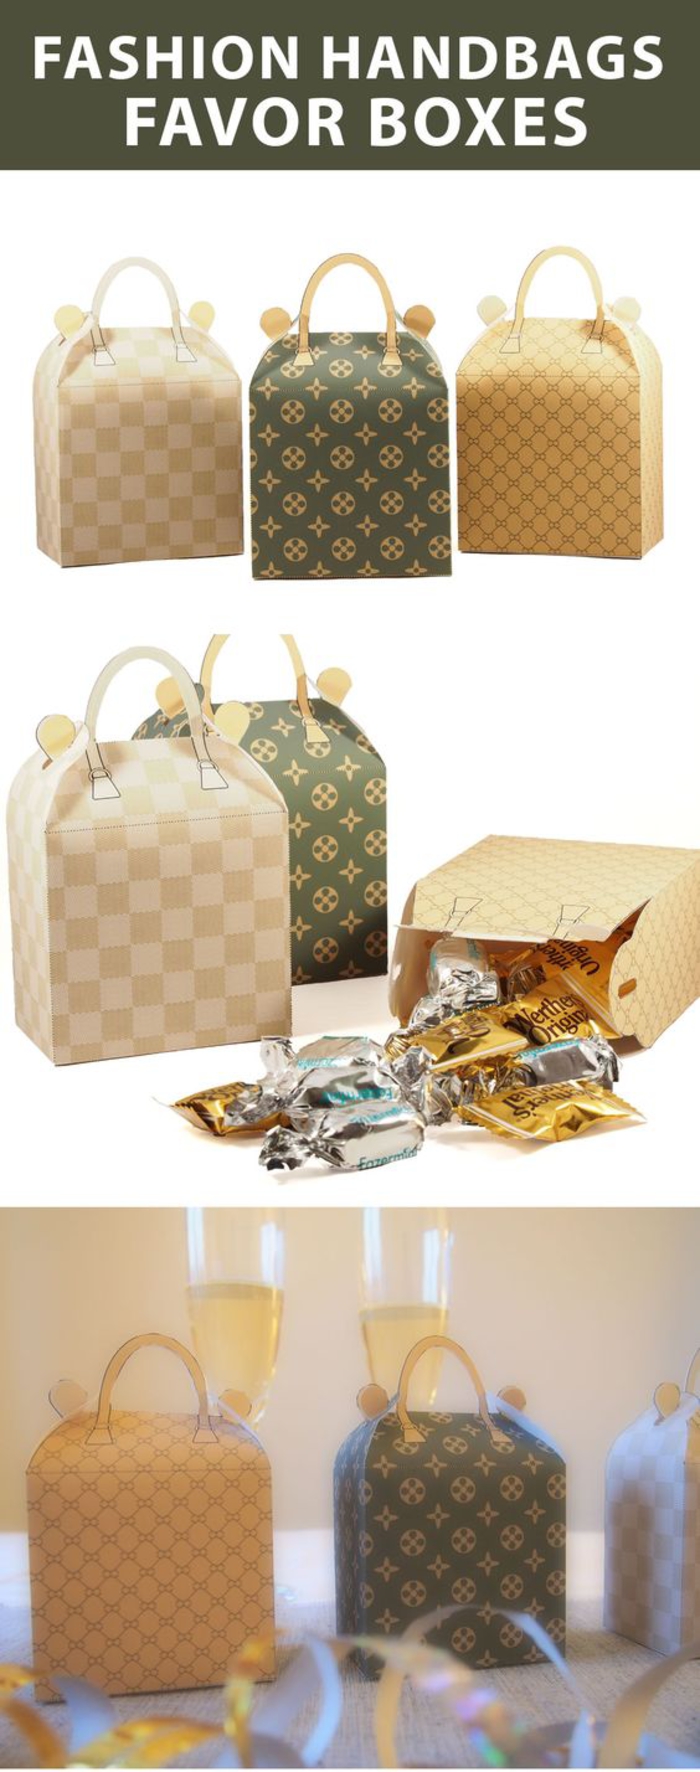 ajándékok a vendégeknek, esküvő, csomagolás, bőrönd, édességek dobozában